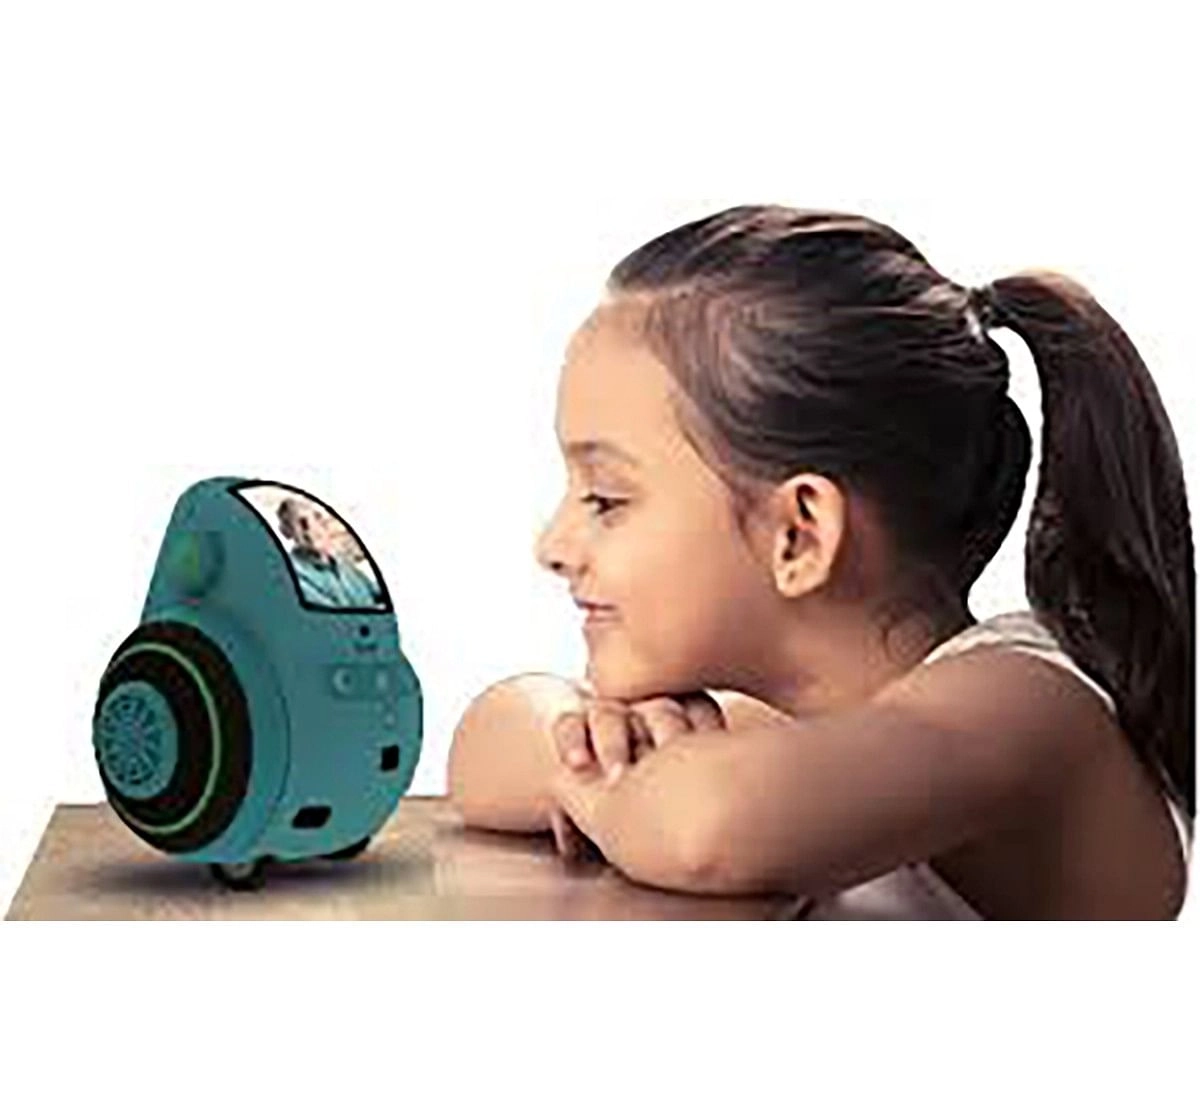 Miko 2 My Companion Robot - Blue Robotics for Kids age 5Y+ (Blue)